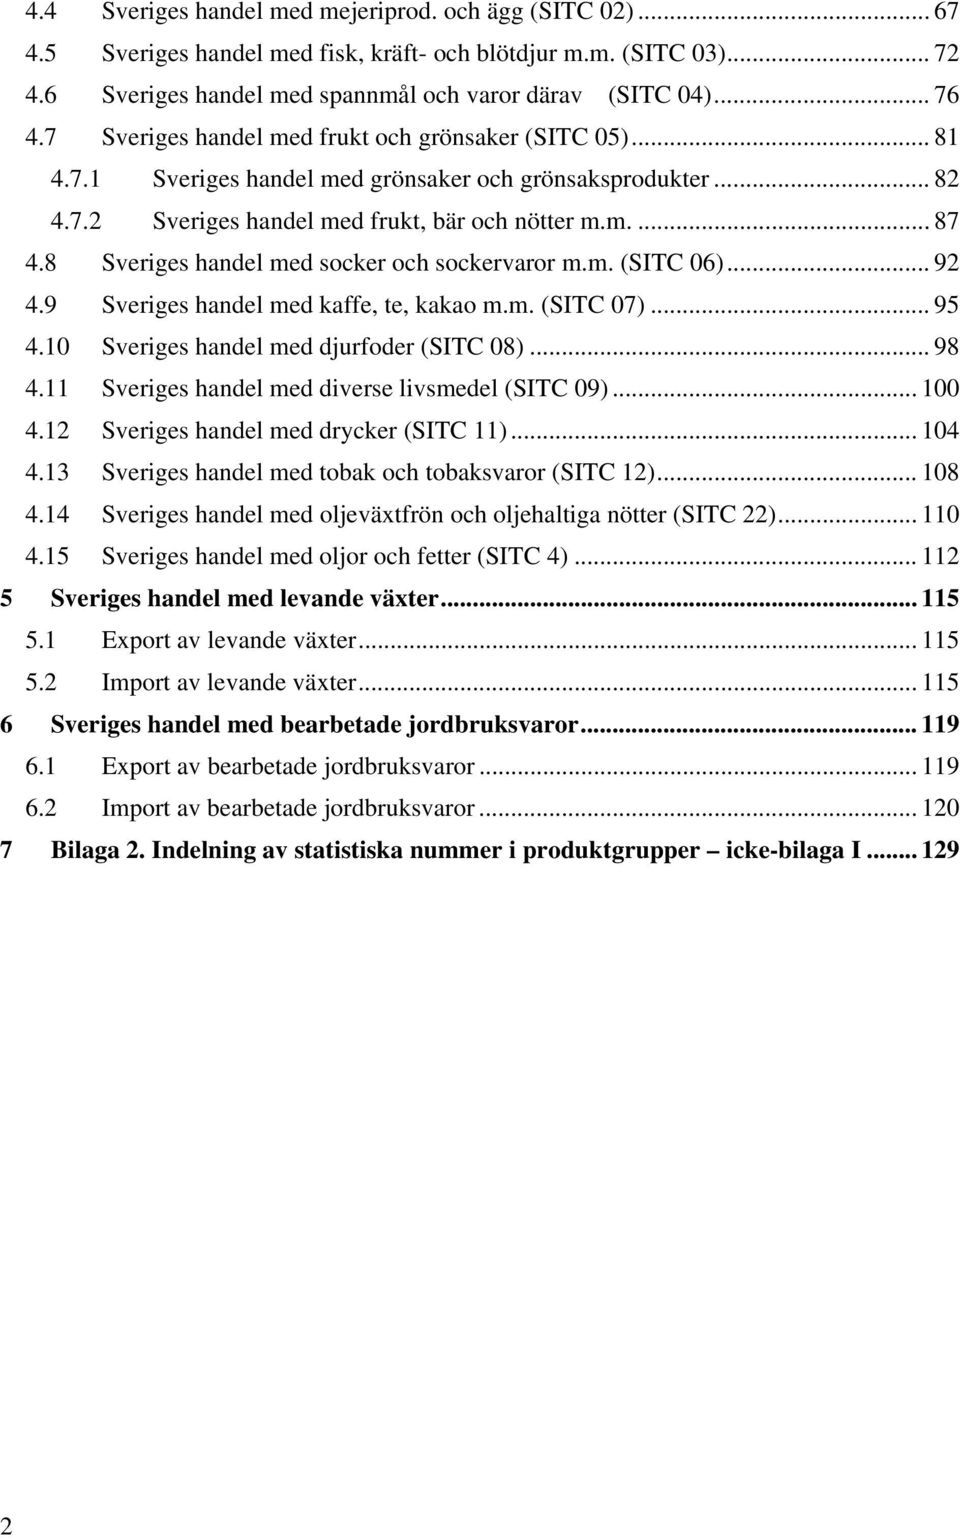 8 Sveriges handel med socker och sockervaror m.m. (SITC 06)... 92 4.9 Sveriges handel med kaffe, te, kakao m.m. (SITC 07)... 95 4.10 Sveriges handel med djurfoder (SITC 08)... 98 4.